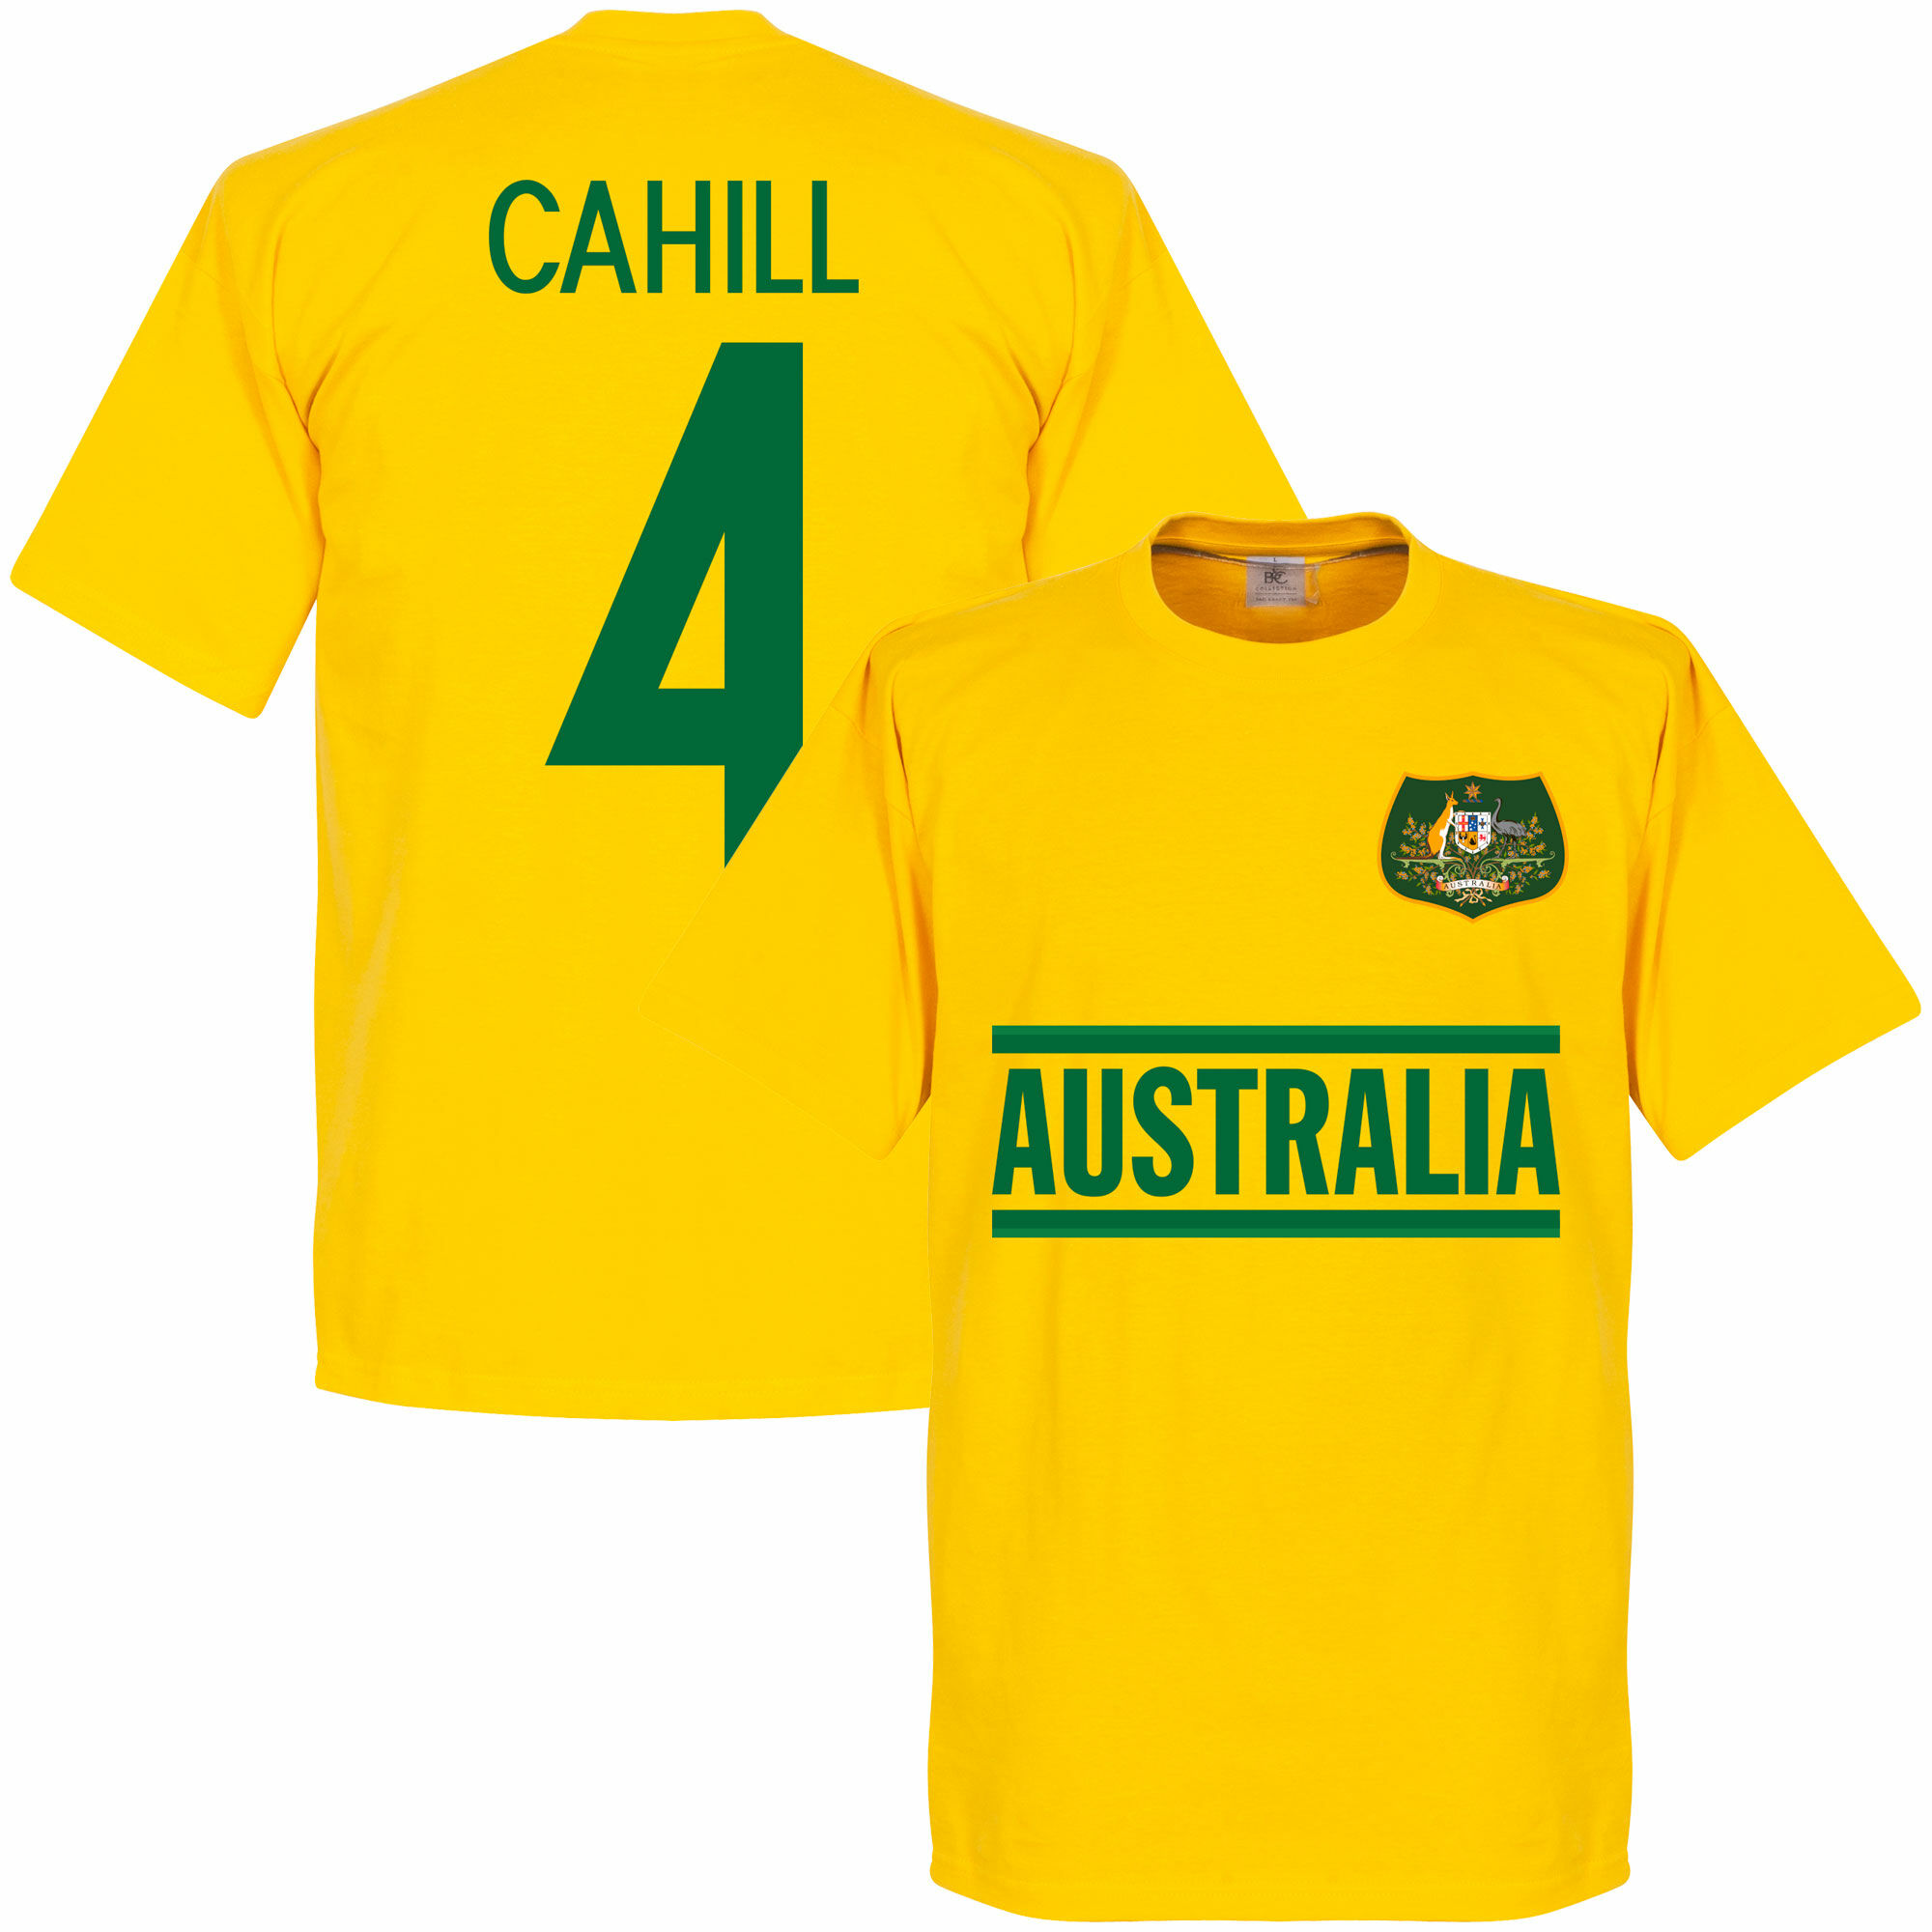 Austrálie - Tričko - žluté, Tim Cahill, číslo 4